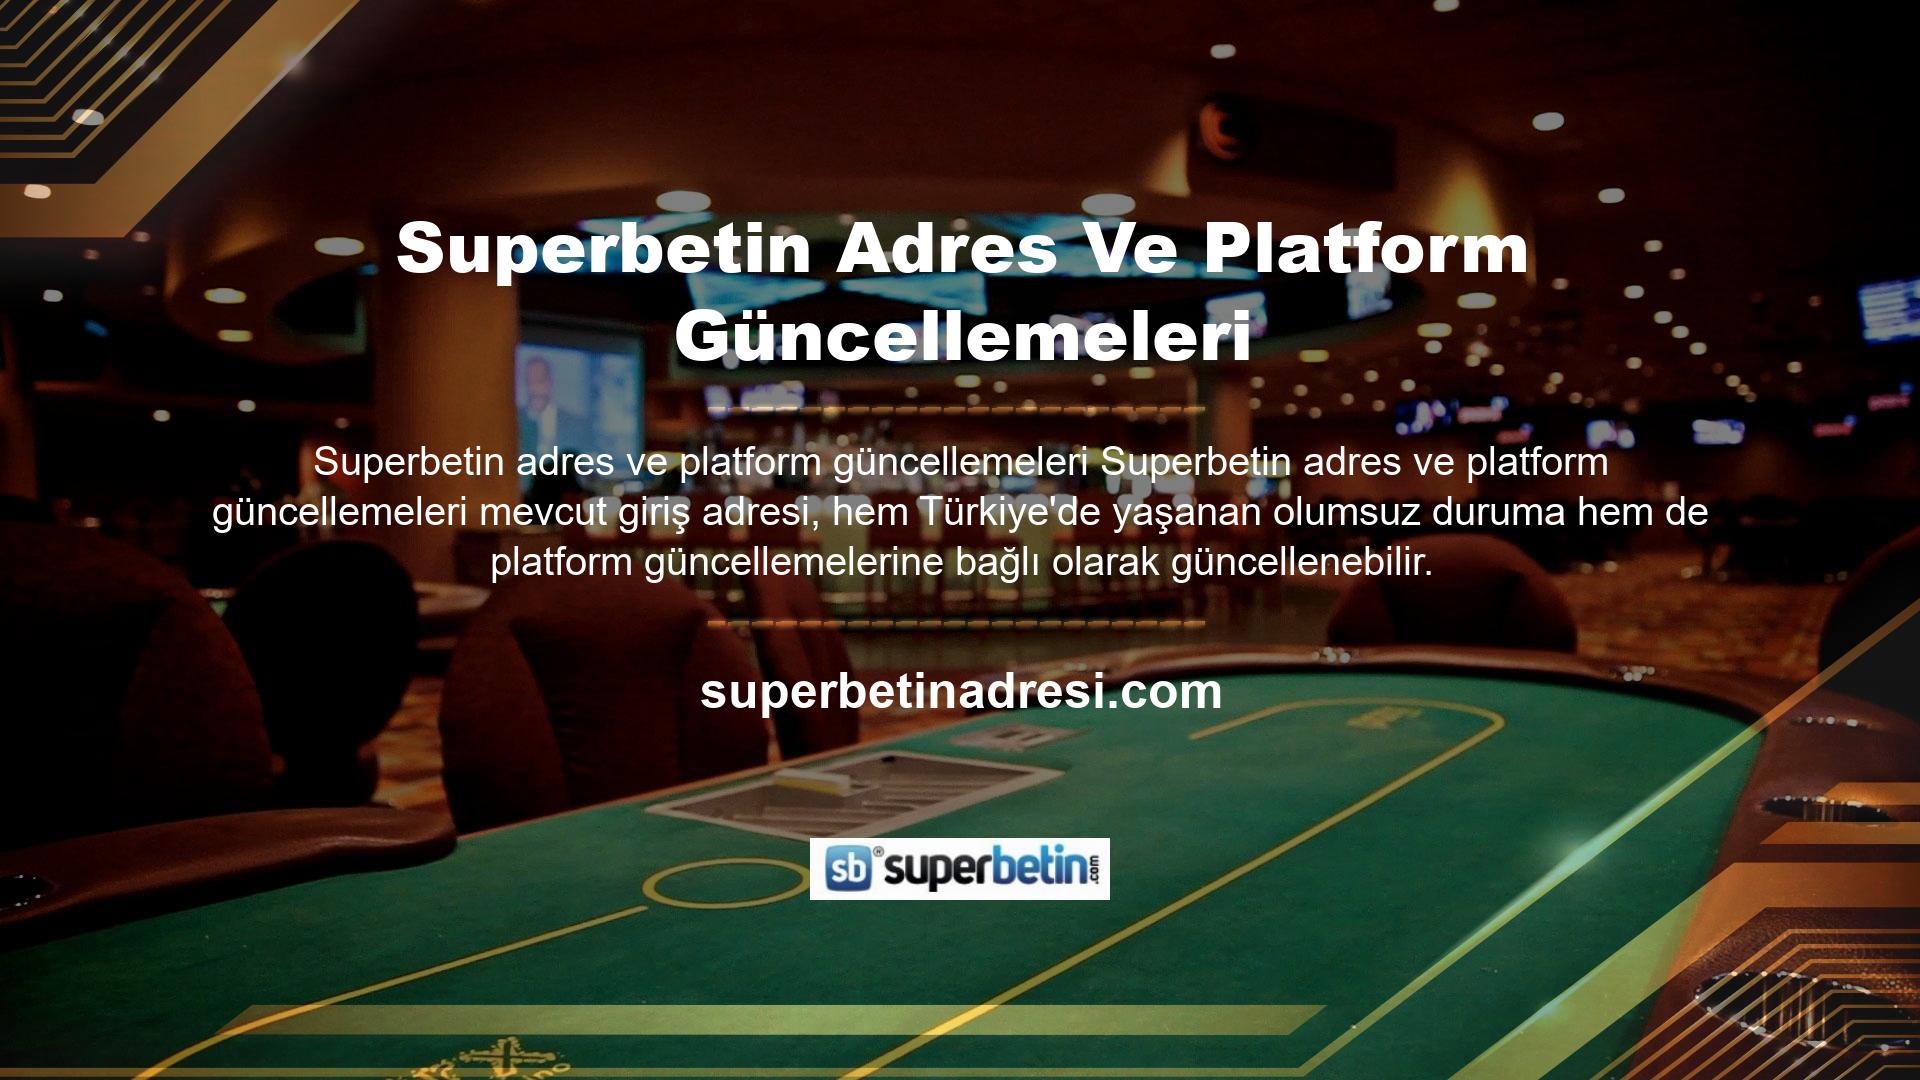 Türkiye'ye hizmet veren tüm çevrimiçi casino kuruluşları bu duruma maruz kalmaktadır